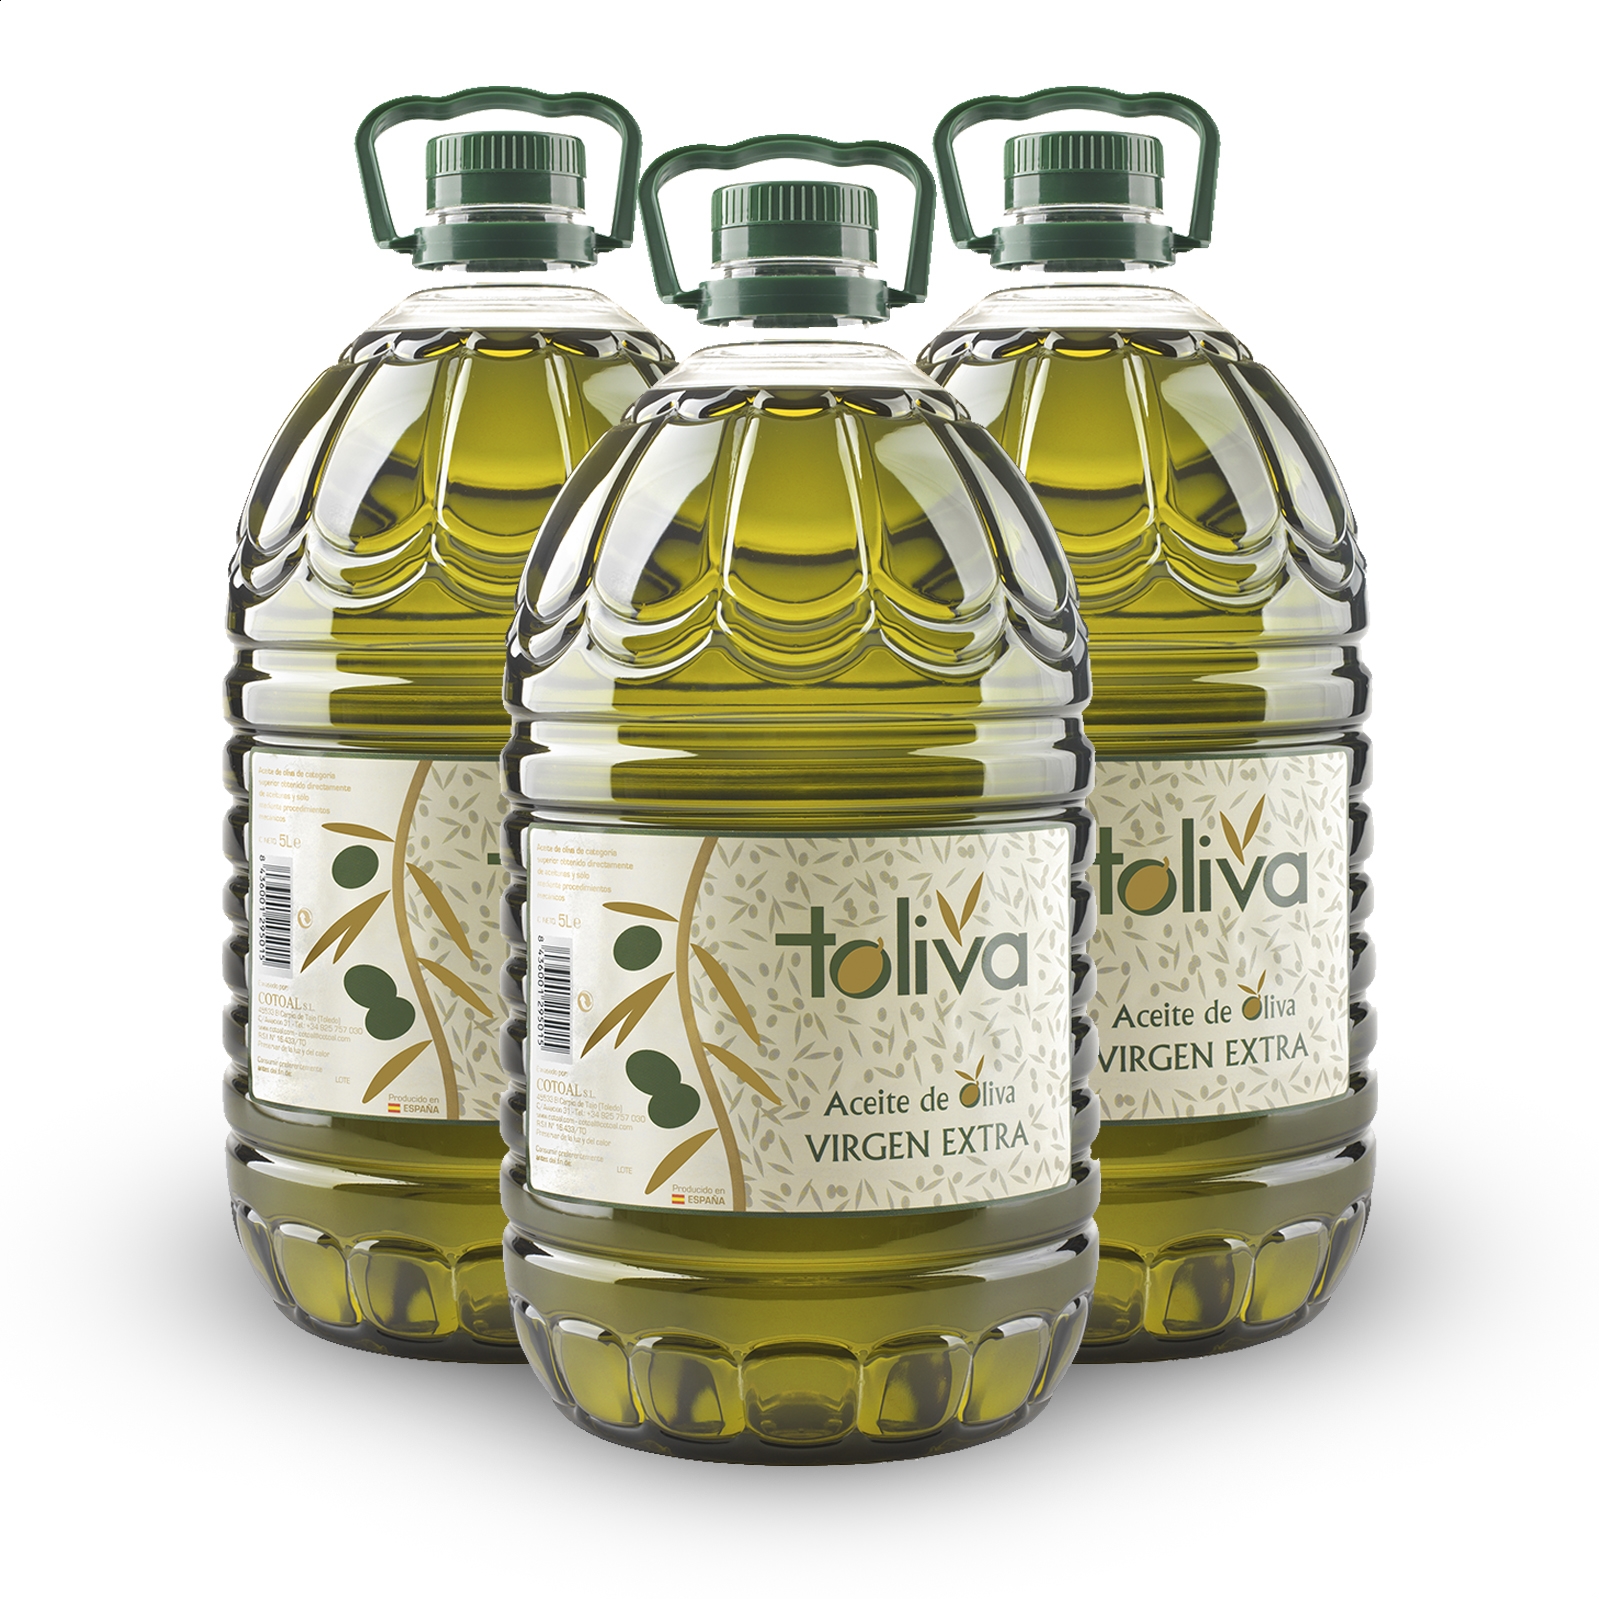 Toliva - Aceite de oliva virgen extra coupage 5L, 3uds